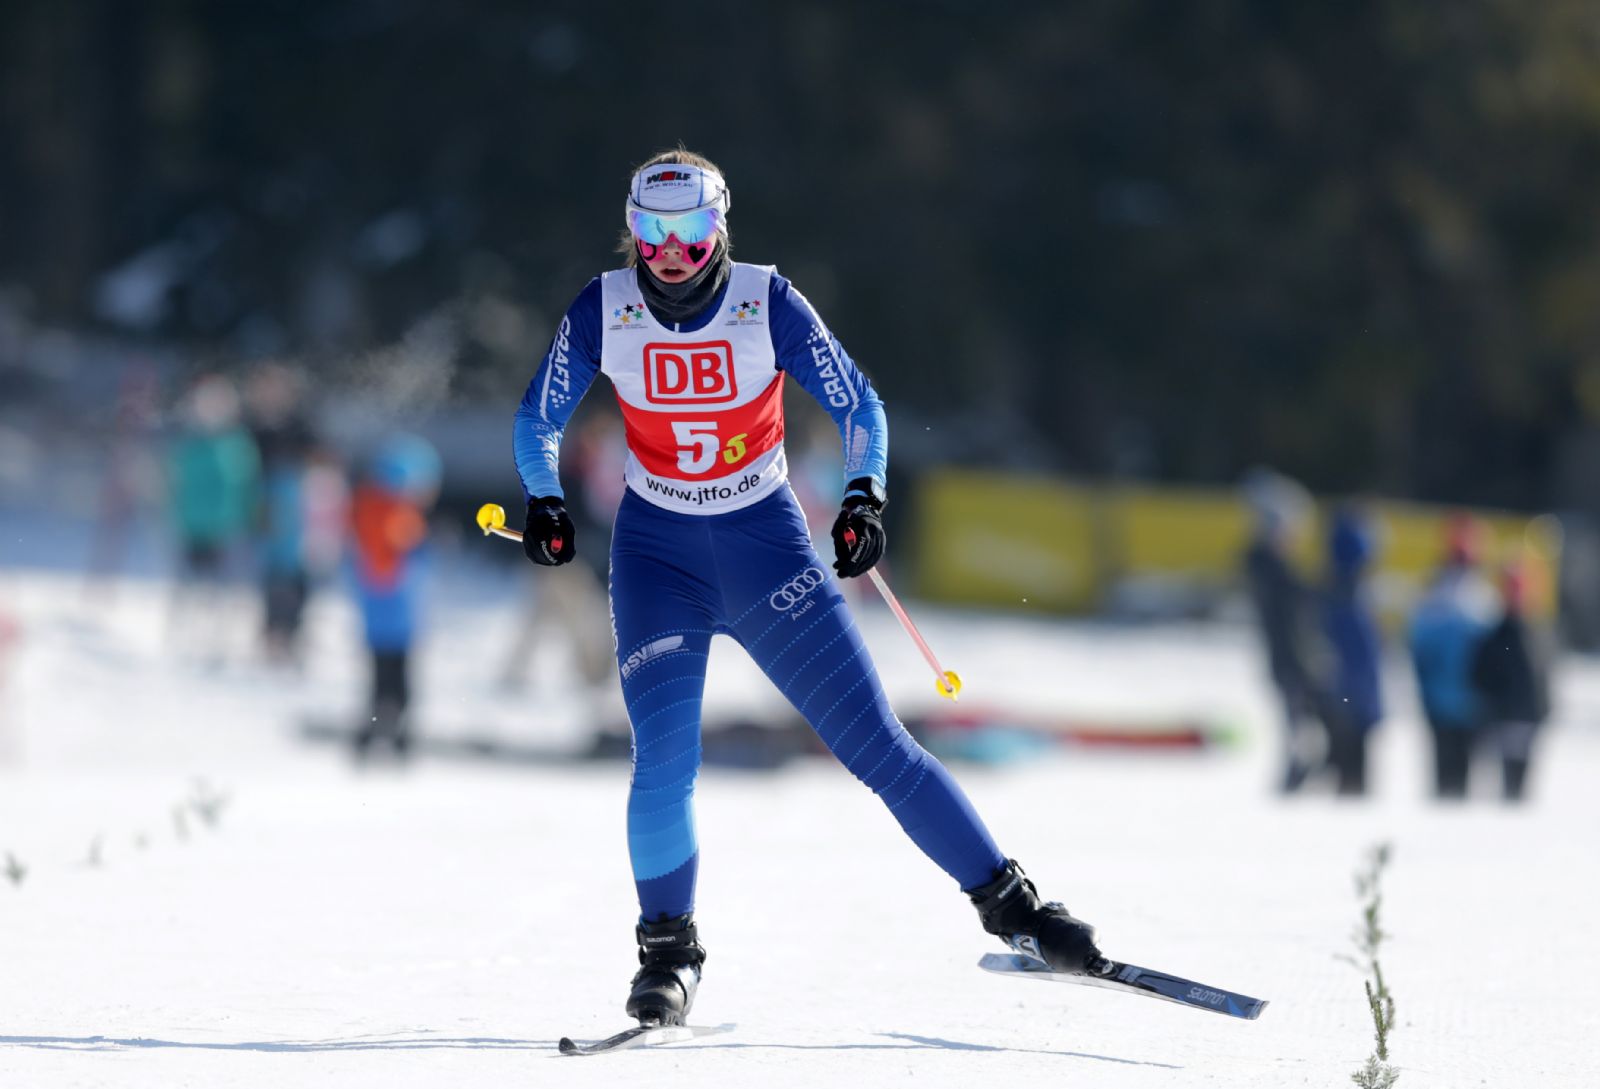 Bild einer Skilangläuferin beim Bundesfinale Jugend trainiert für Olympia & Paralympics